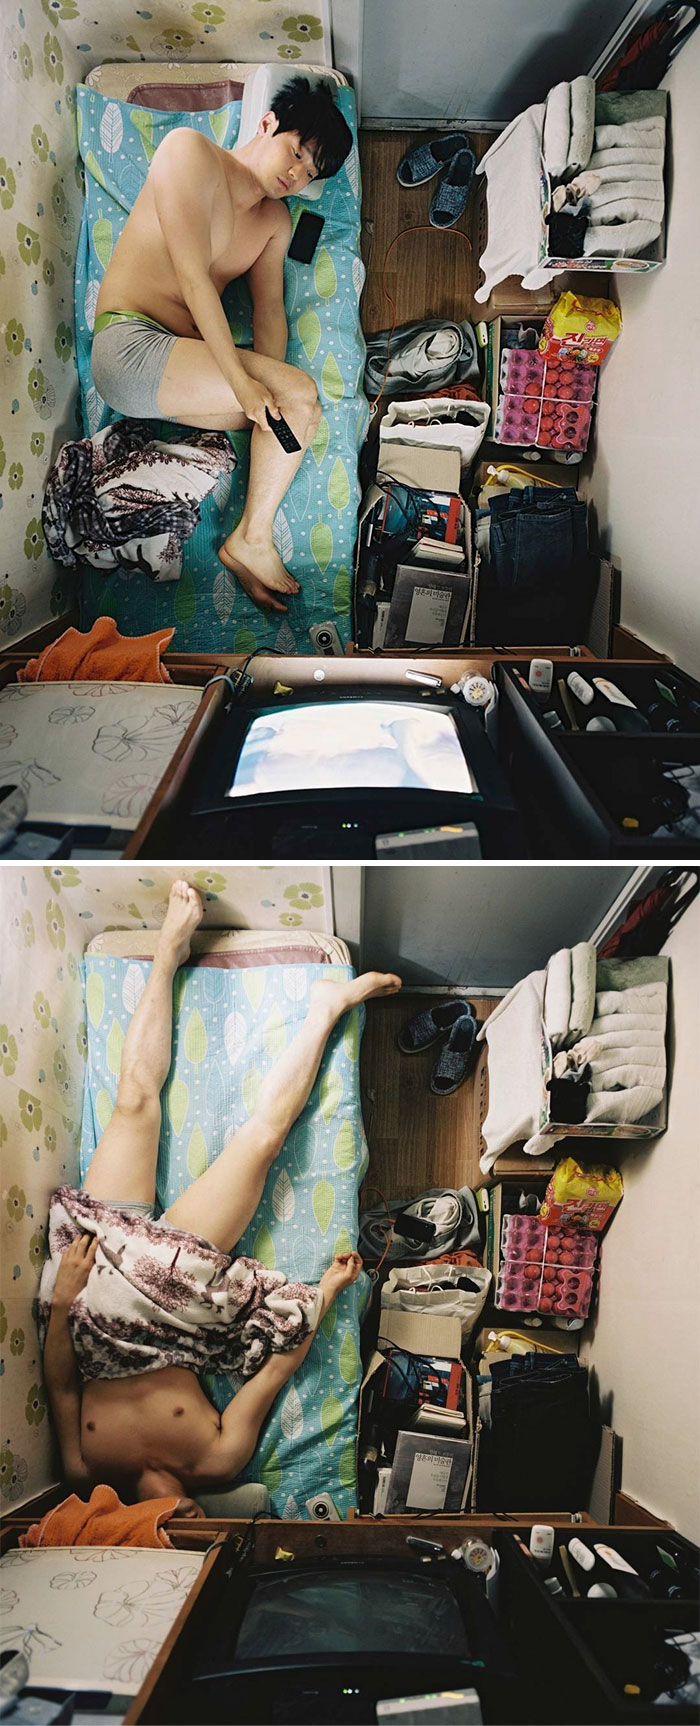 Фотограф показал жизнь бедных корейцев - эти фото заставят вас полюбить свою квартиру. ФОТО